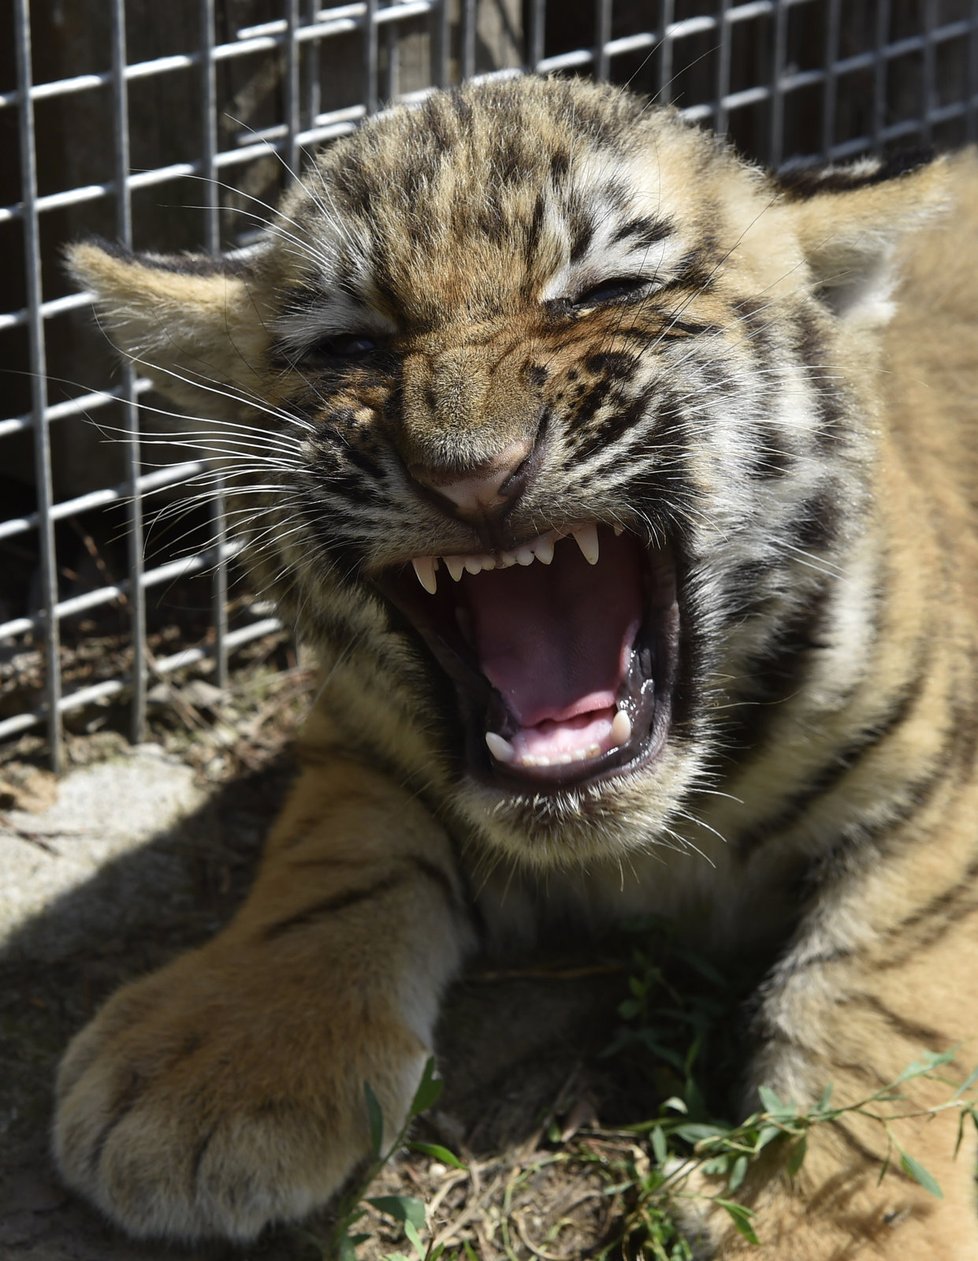 Tygříci mají po třech měsících od porodu tak silné zuby, že již dokážou kousat maso.